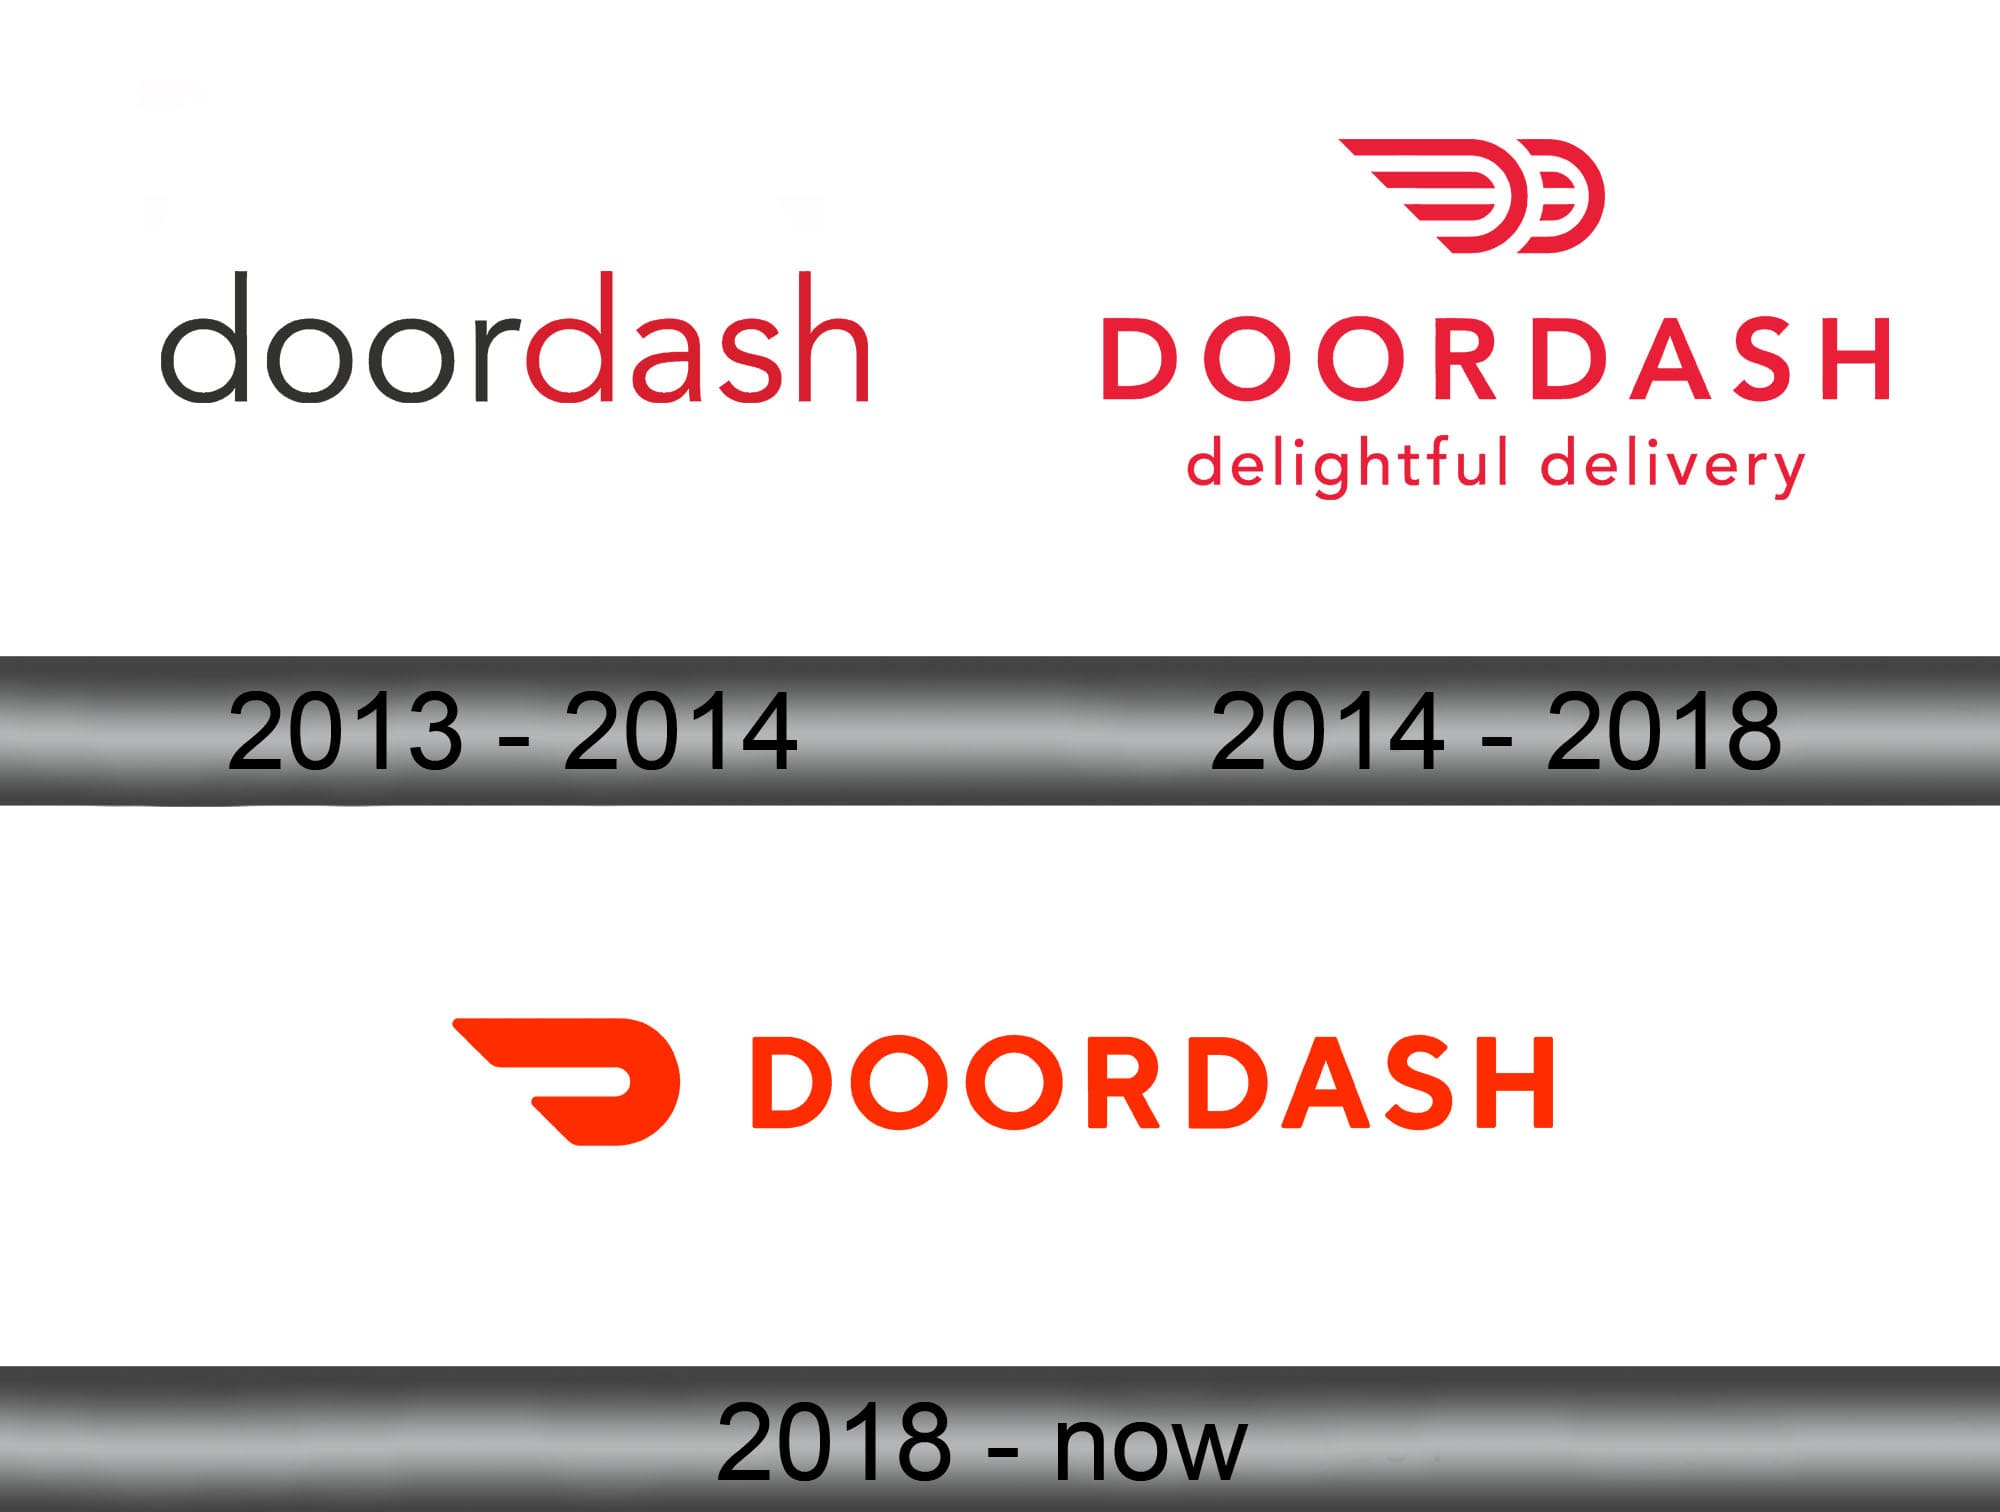 DoorDash Logo and Its History